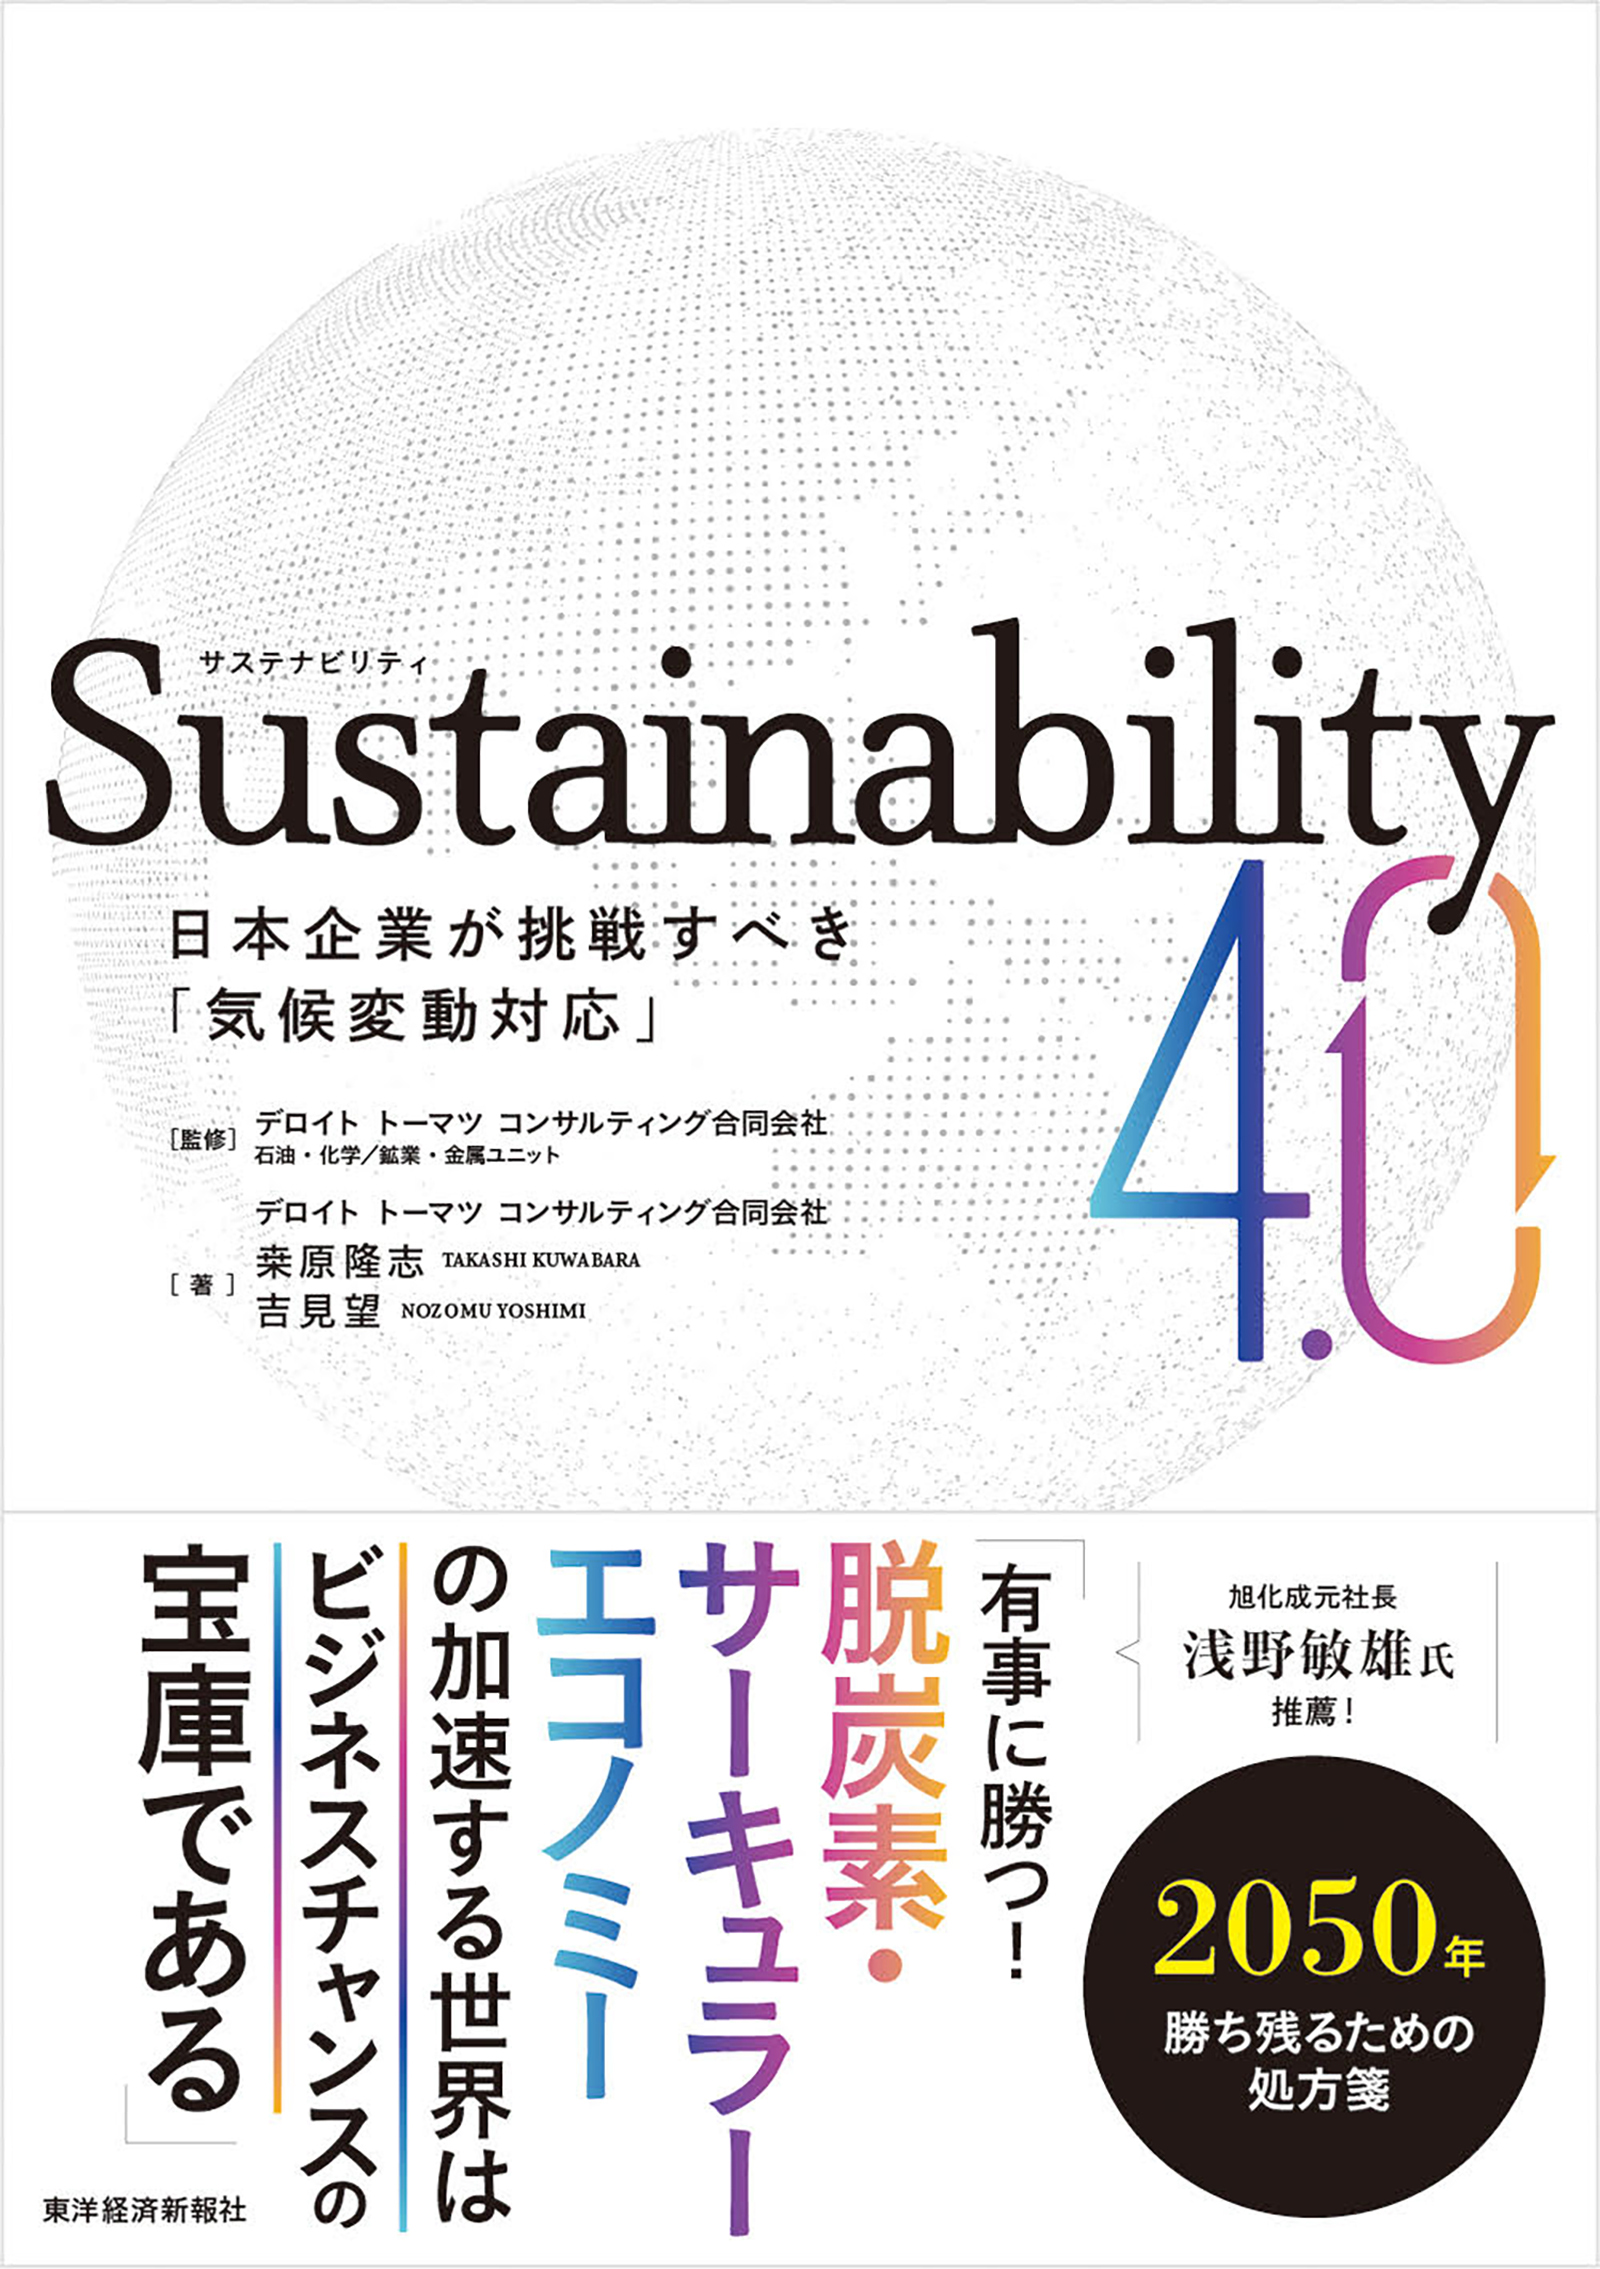 Sustainability4.0